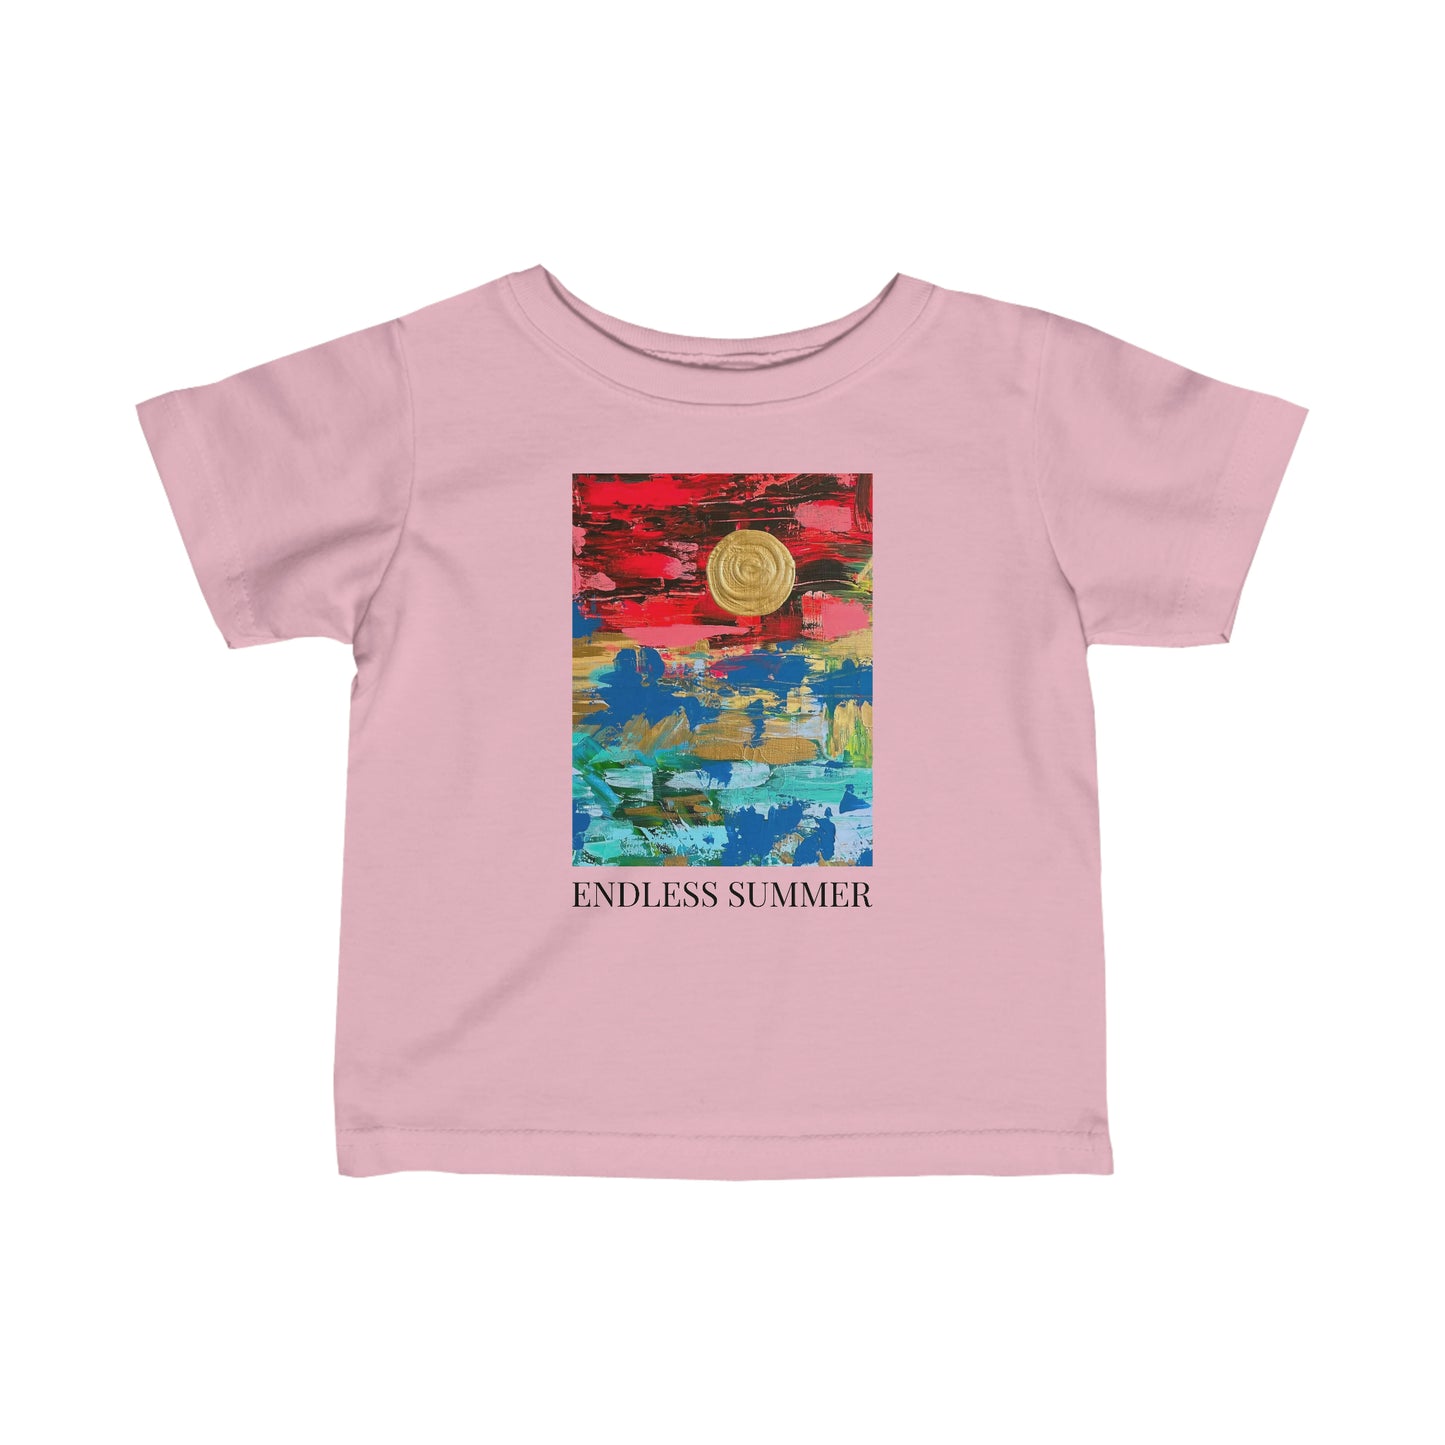 Infant "Endless Summer" Original Artwork Jersey Tee